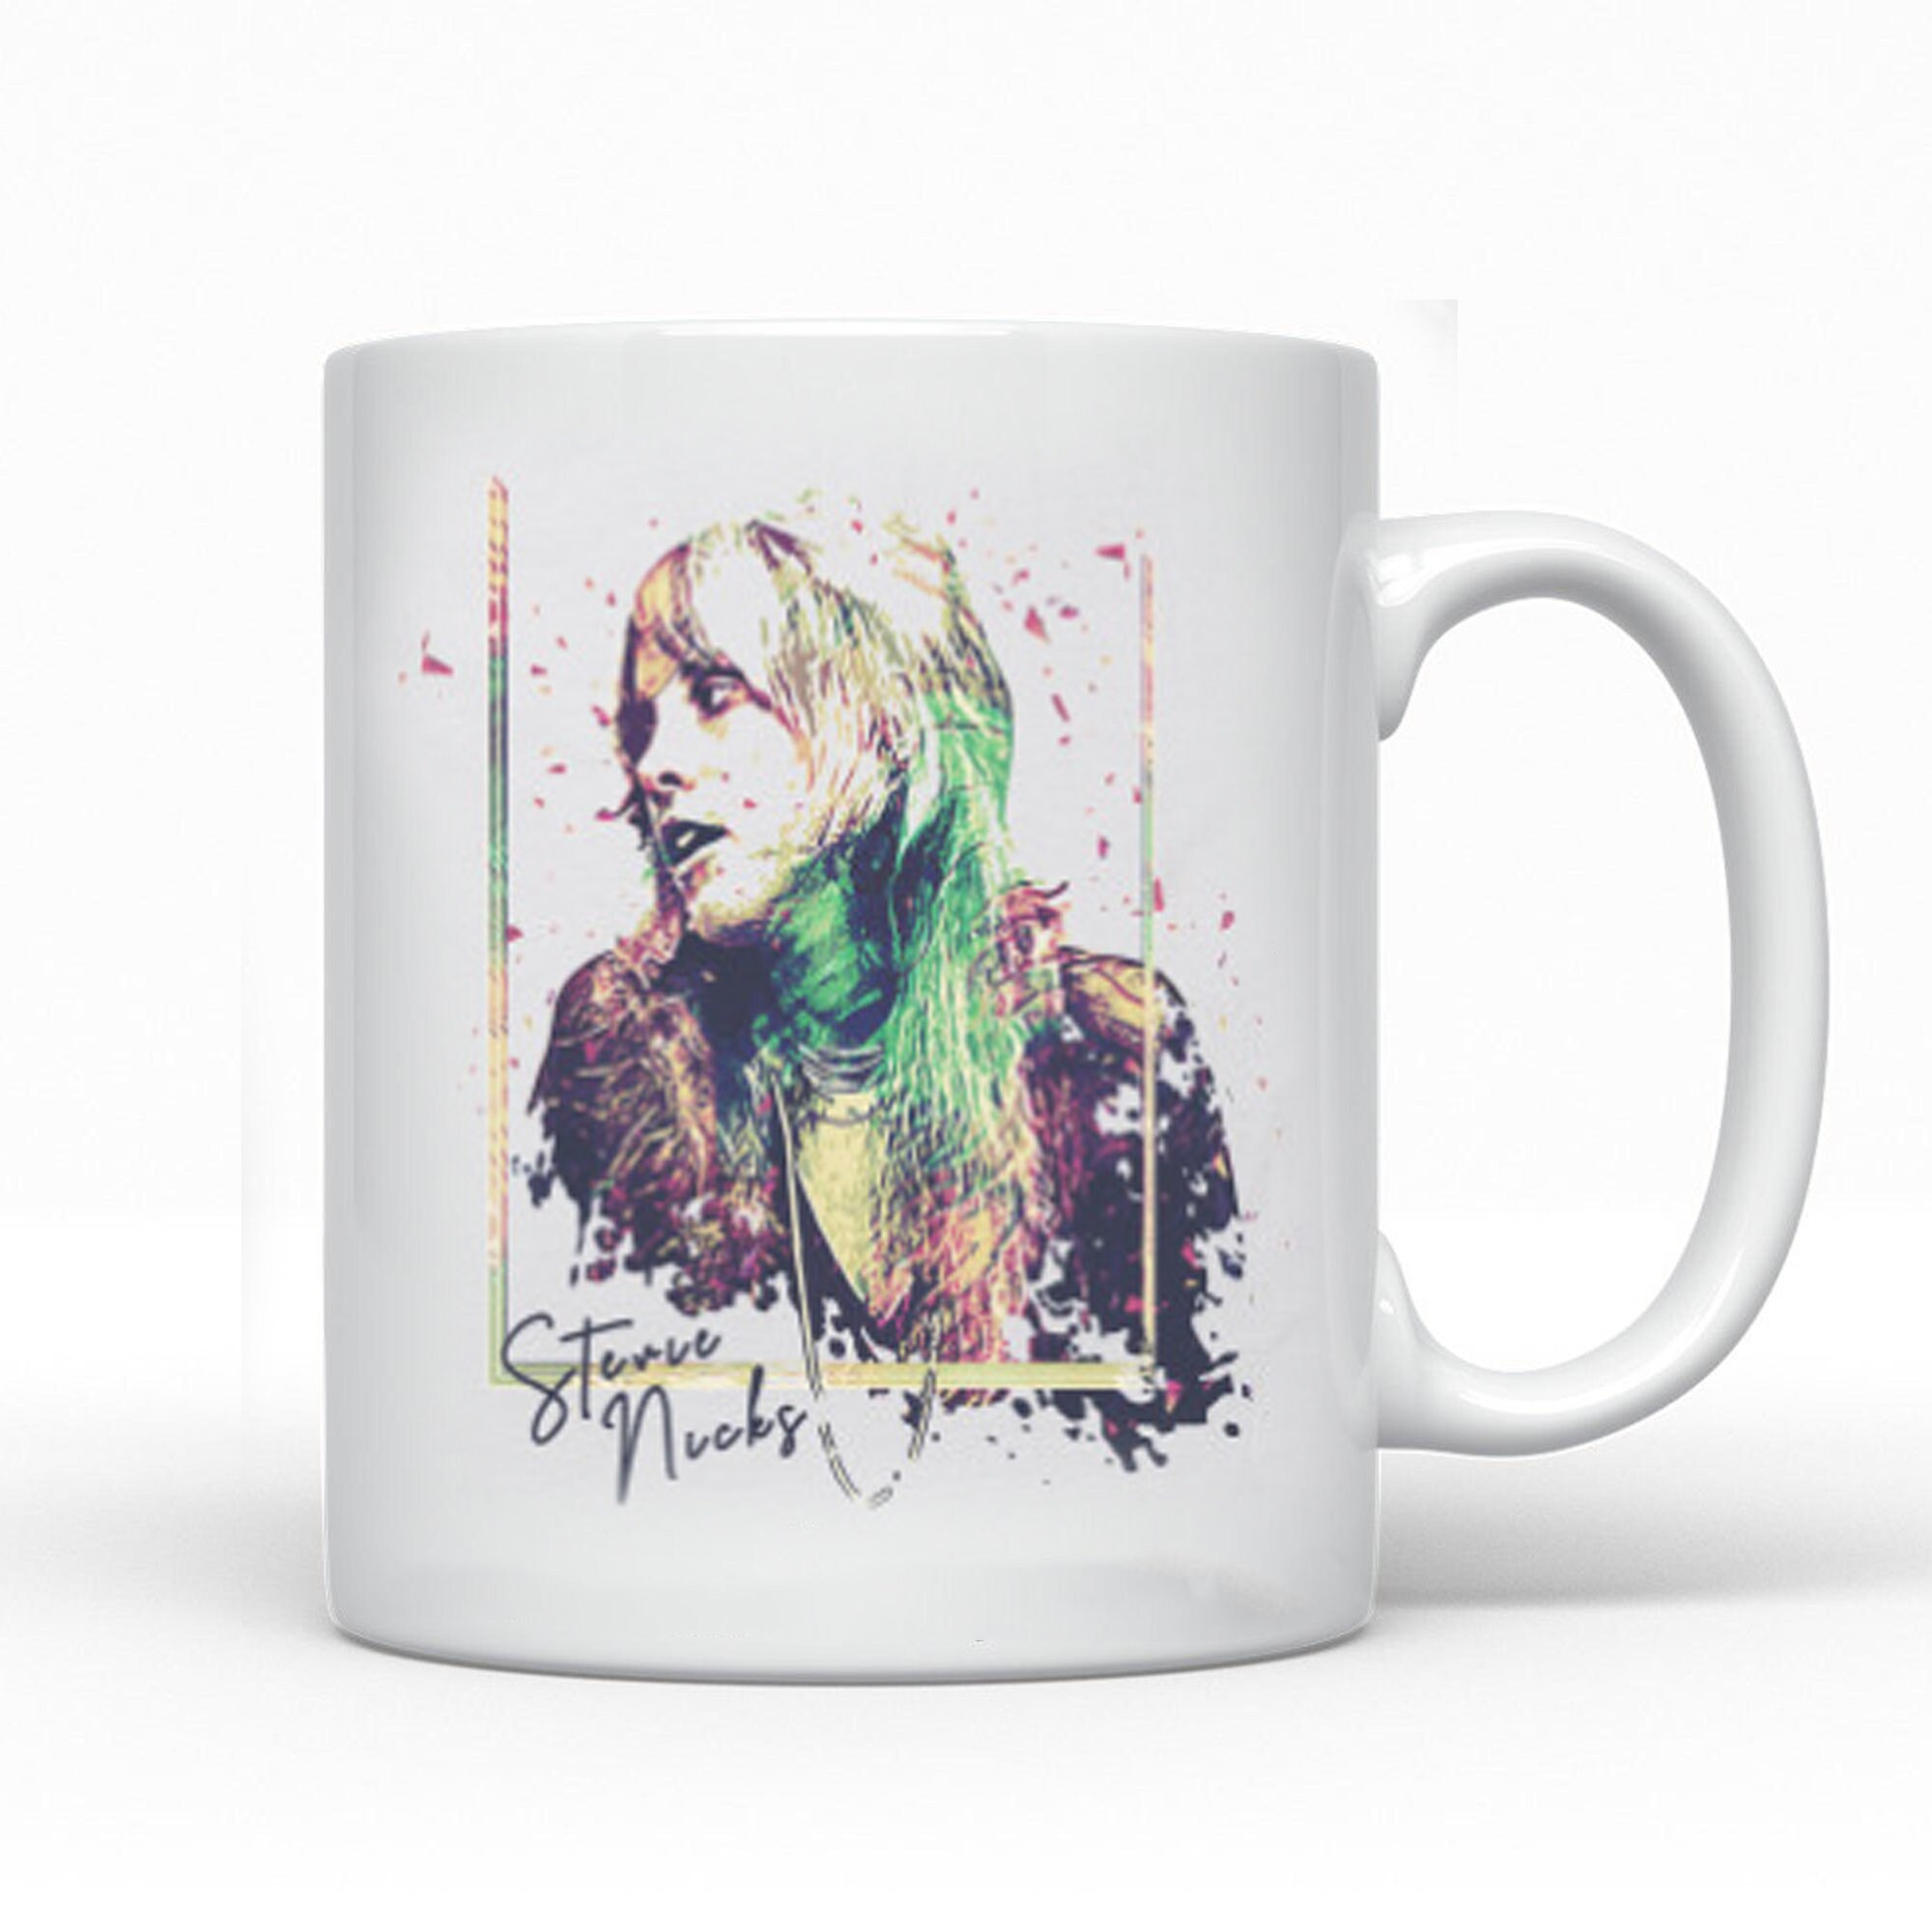 Discover Stevie Nicks The Broken Frame Retro Coffee Mug